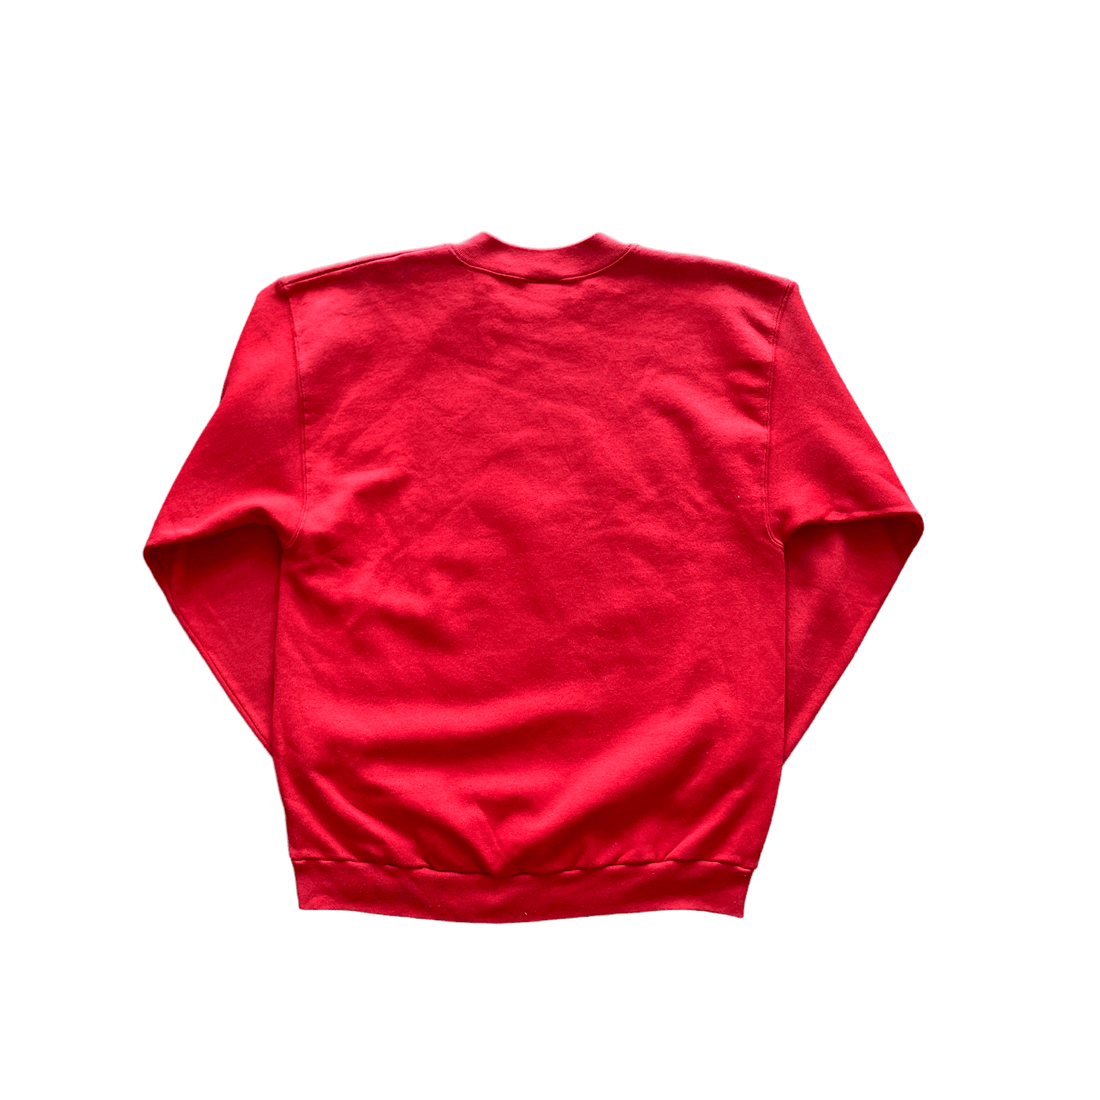 Vintage 90s Red NFL 49ers Sweatshirt - Large - The Streetwear Studio